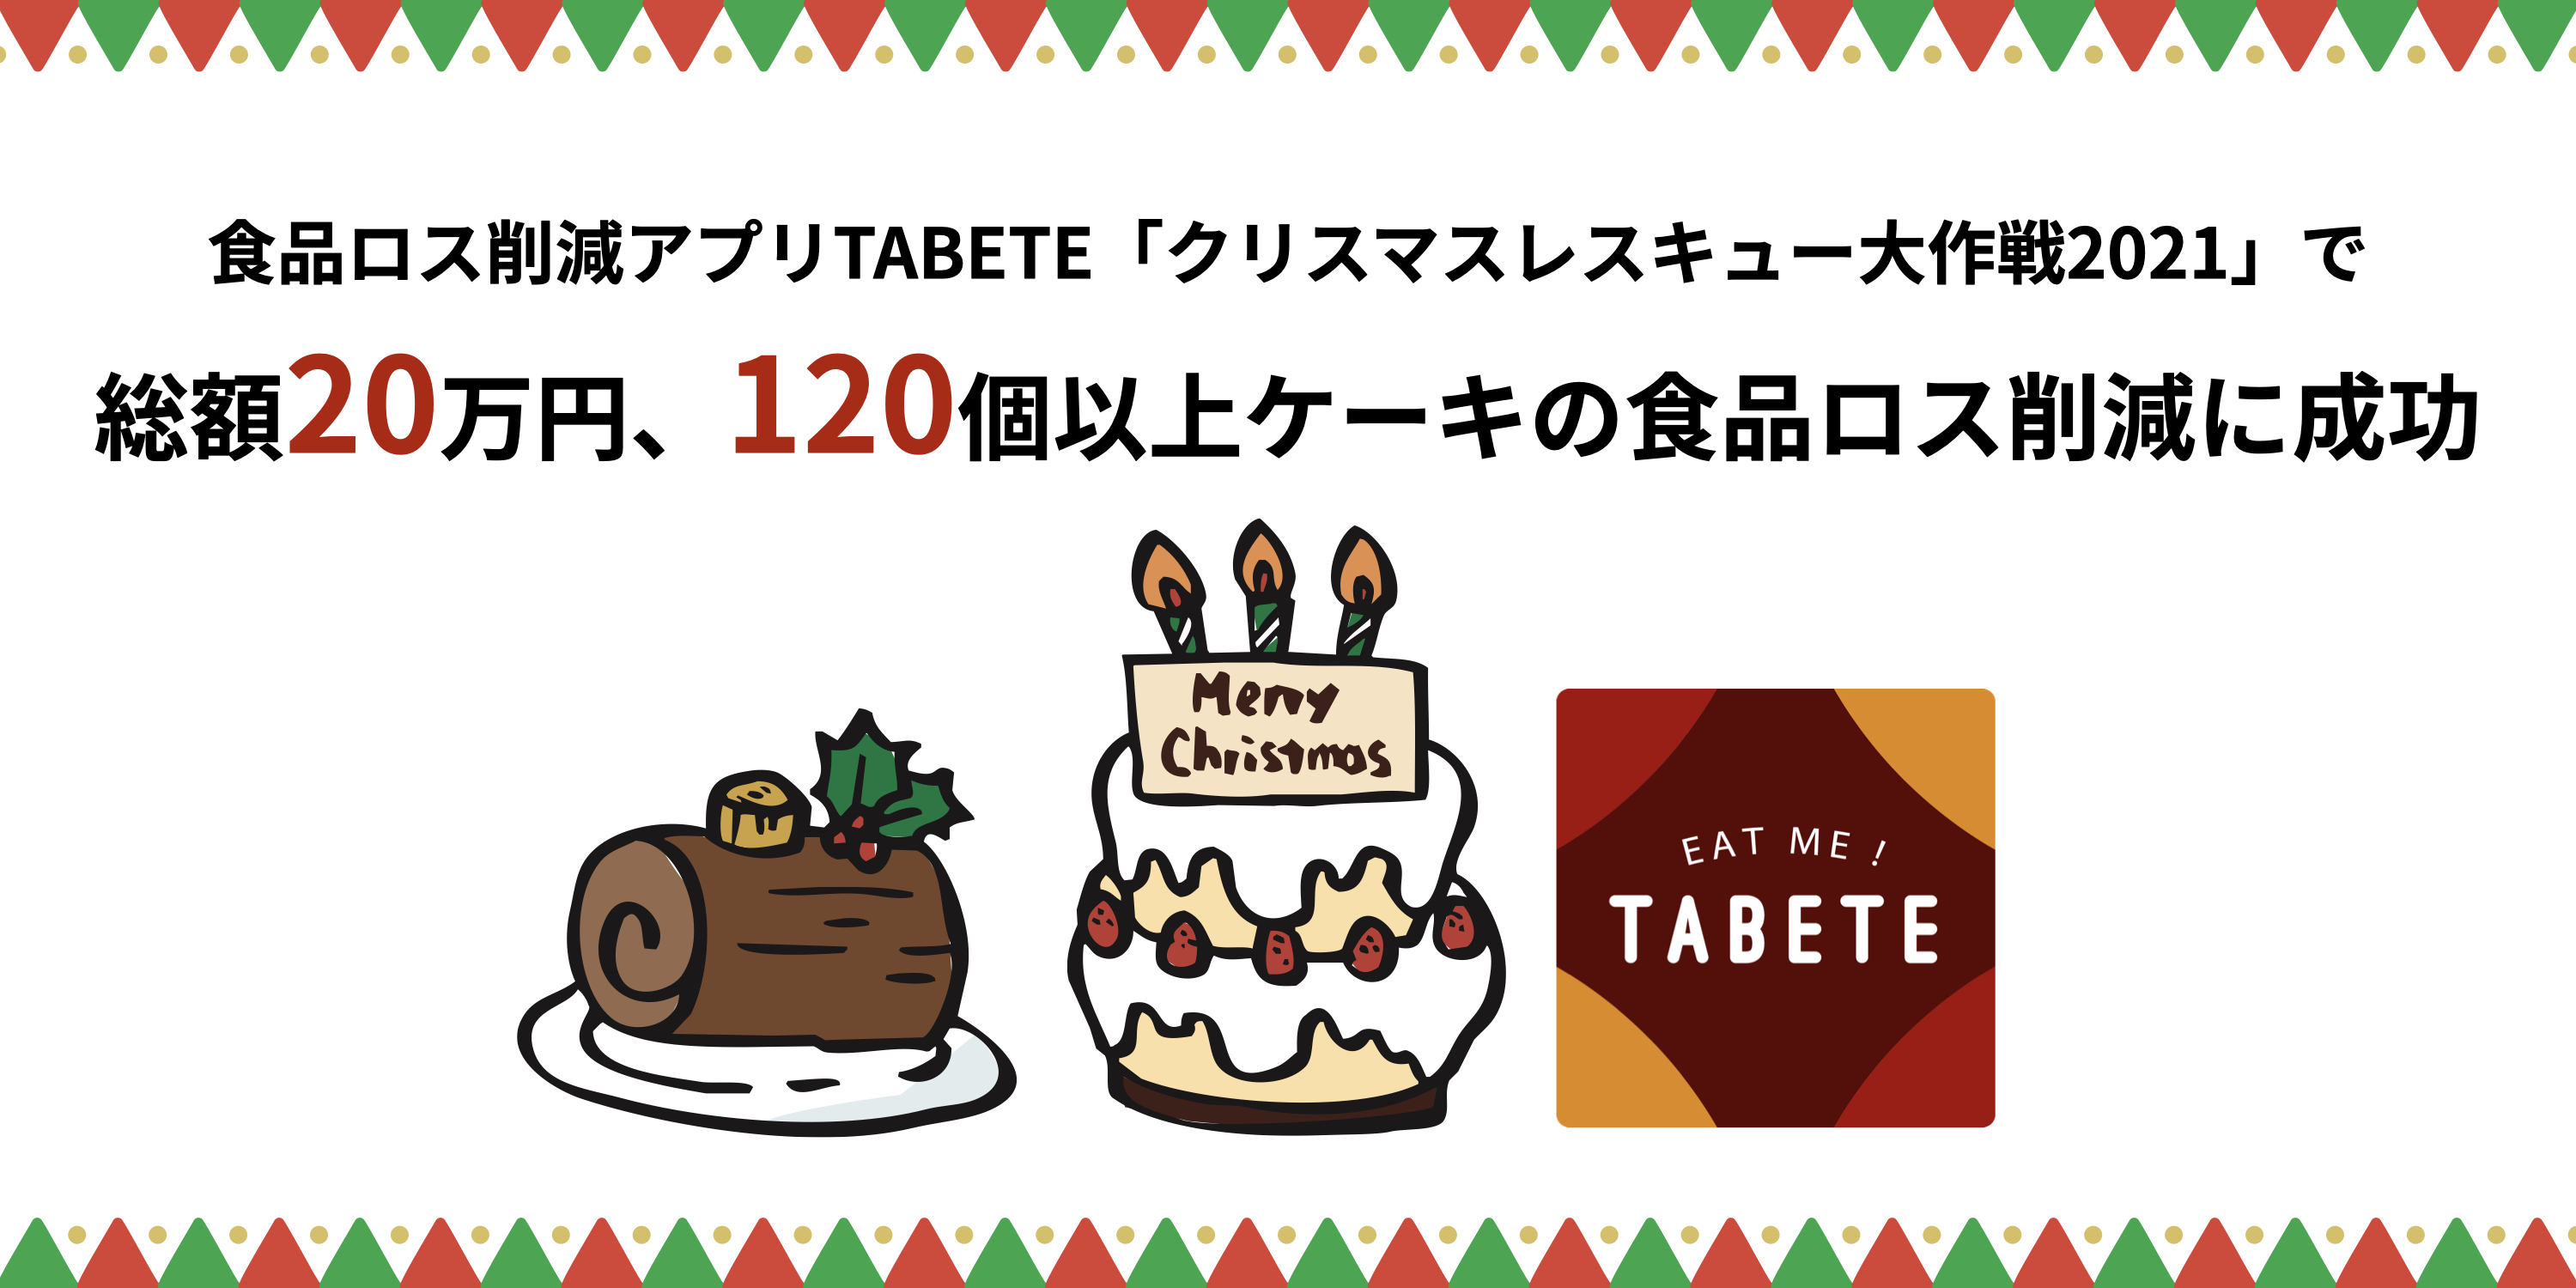 クリスマス後に発生したケーキ等の食品ロス、TABETEで削減に成功。25日からの5日間で総額20万円以上、120個以上のケーキの食品ロス削減を達成。のサブ画像1